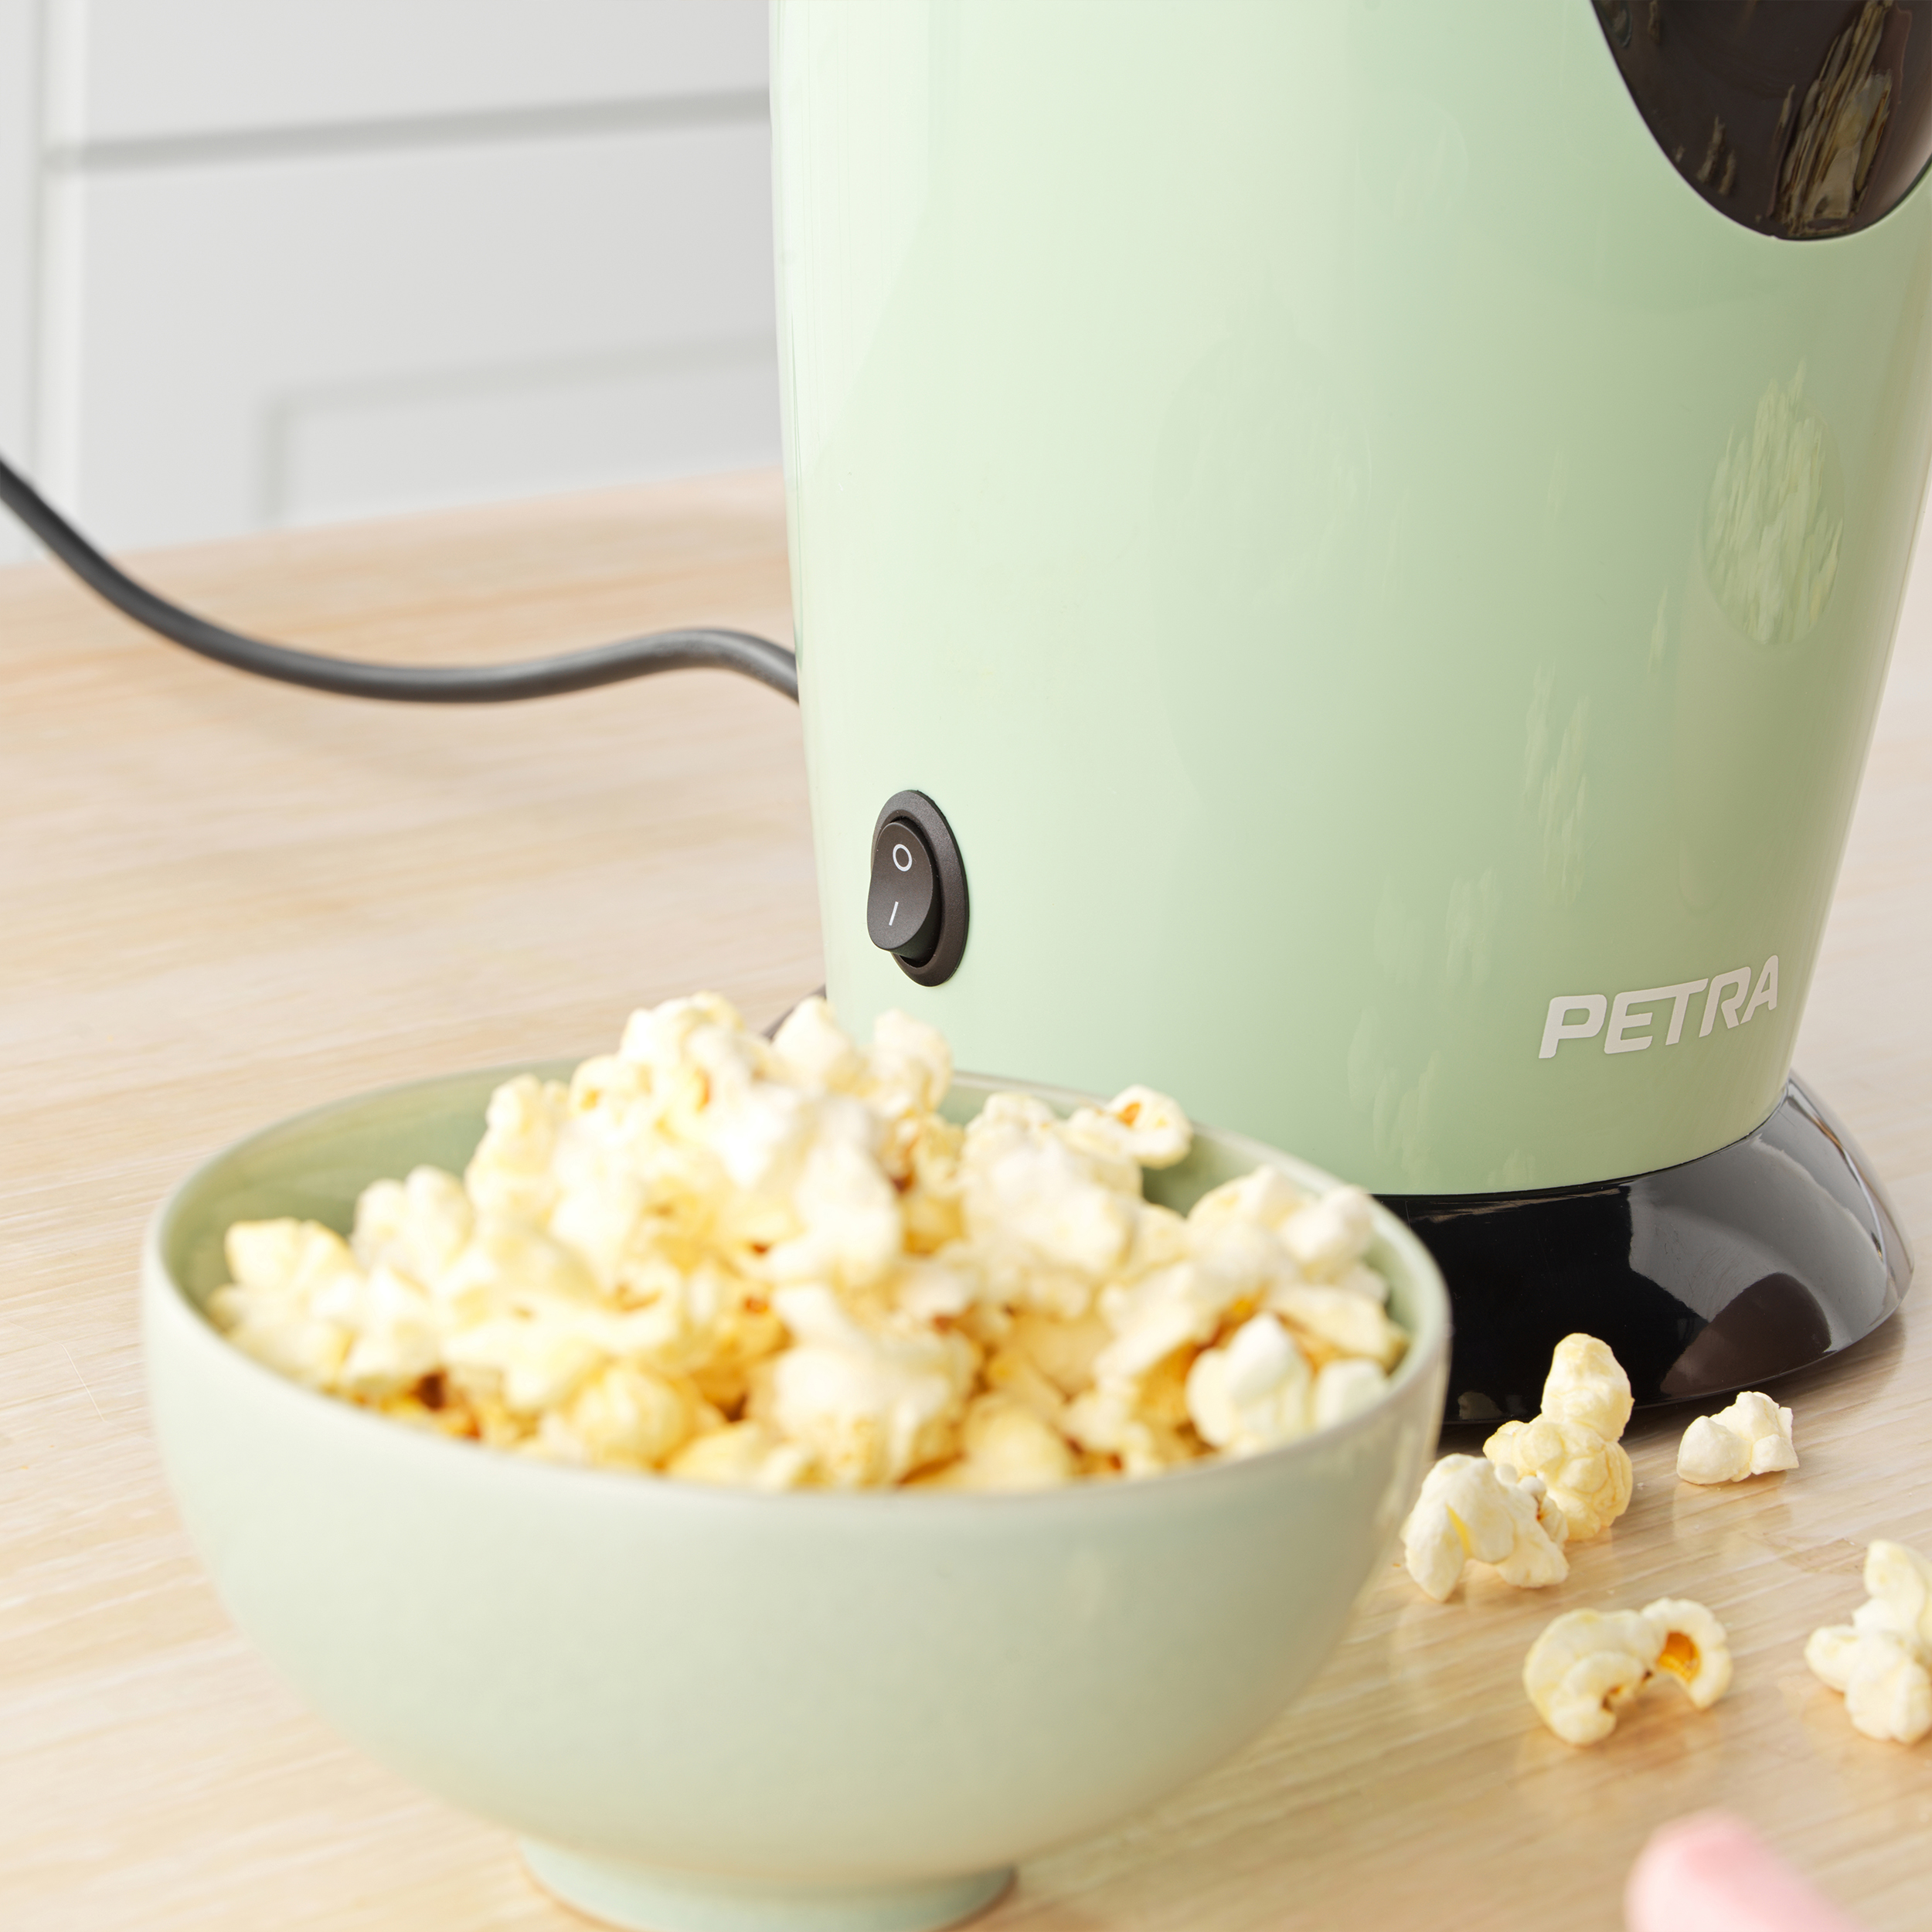 PETRA Retro - 1200W Popcornmaschine Heißluft maker Öl - Messbecher Popcornmaschine Popcorn Popcorn oder grün - Butter - ohne